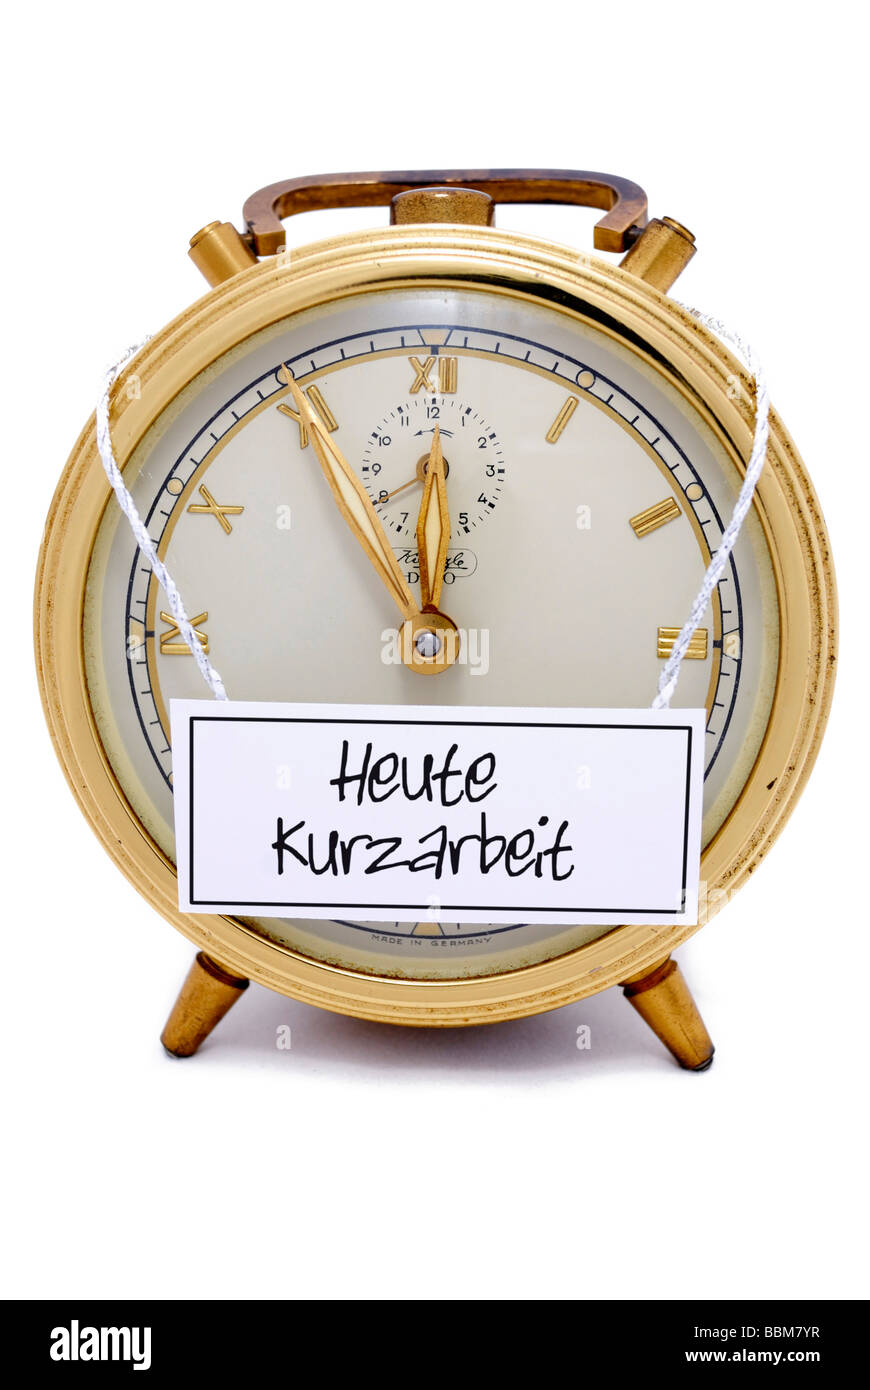 Reloj de alarma, de 5 a 12, "Heute Kurzarbeit', Alemán para: hoy corto tiempo de trabajo, escrito en un letrero Foto de stock